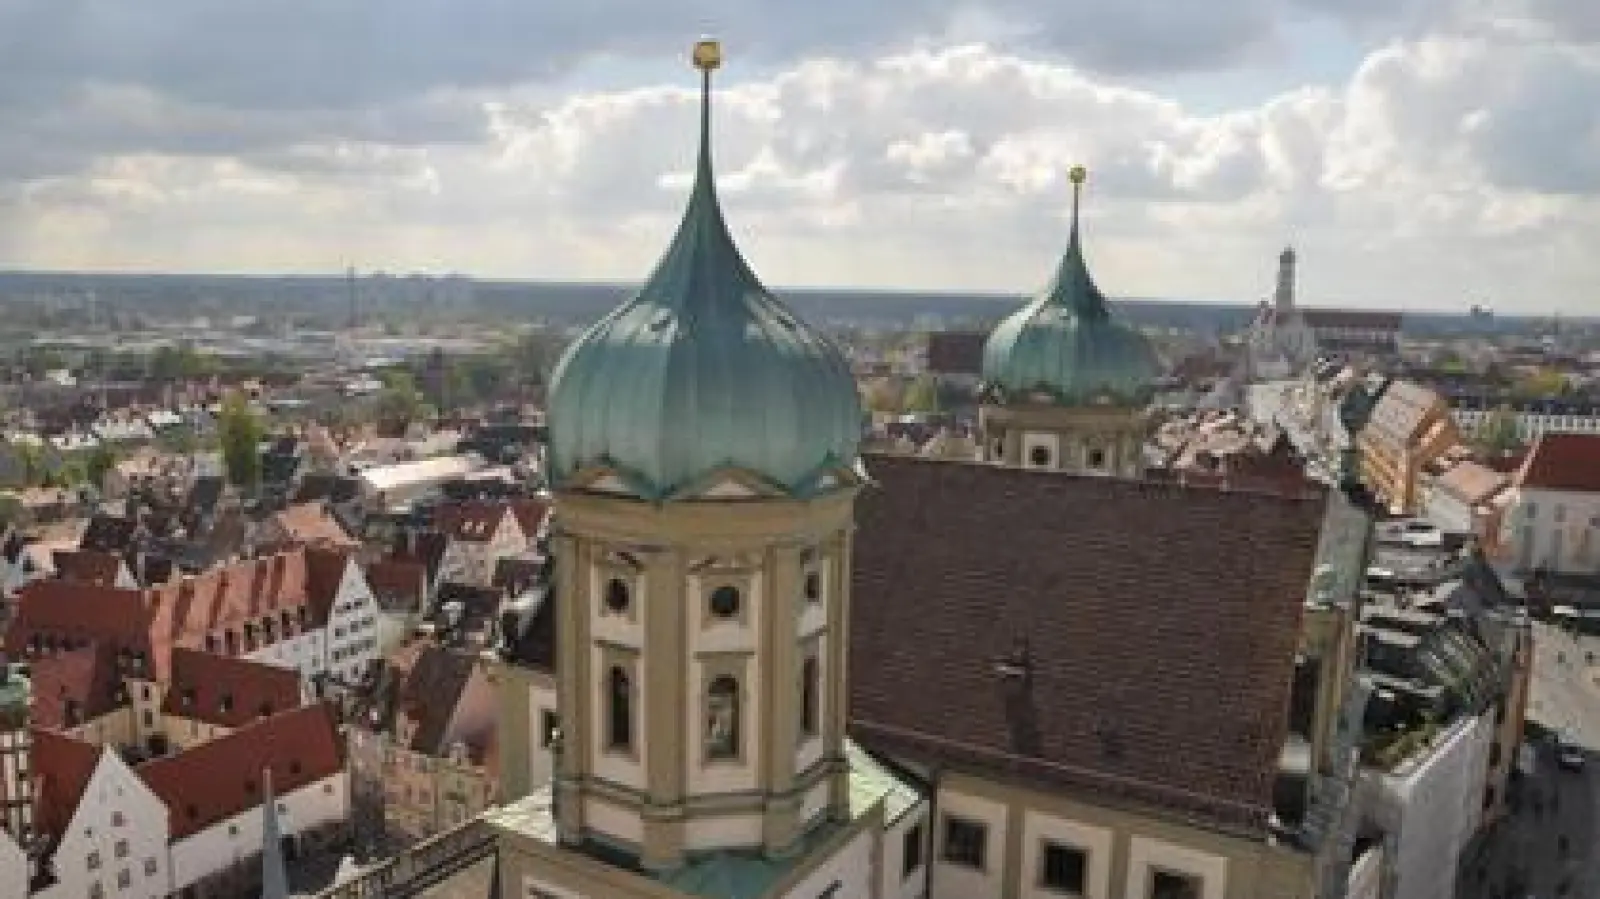 Fantastische Aussichten:   Auch dieser herrliche Blick vom Perlachturm lockt viele Besucher nach Augsburg. 	Foto: David Libossek (Foto: David Libossek)